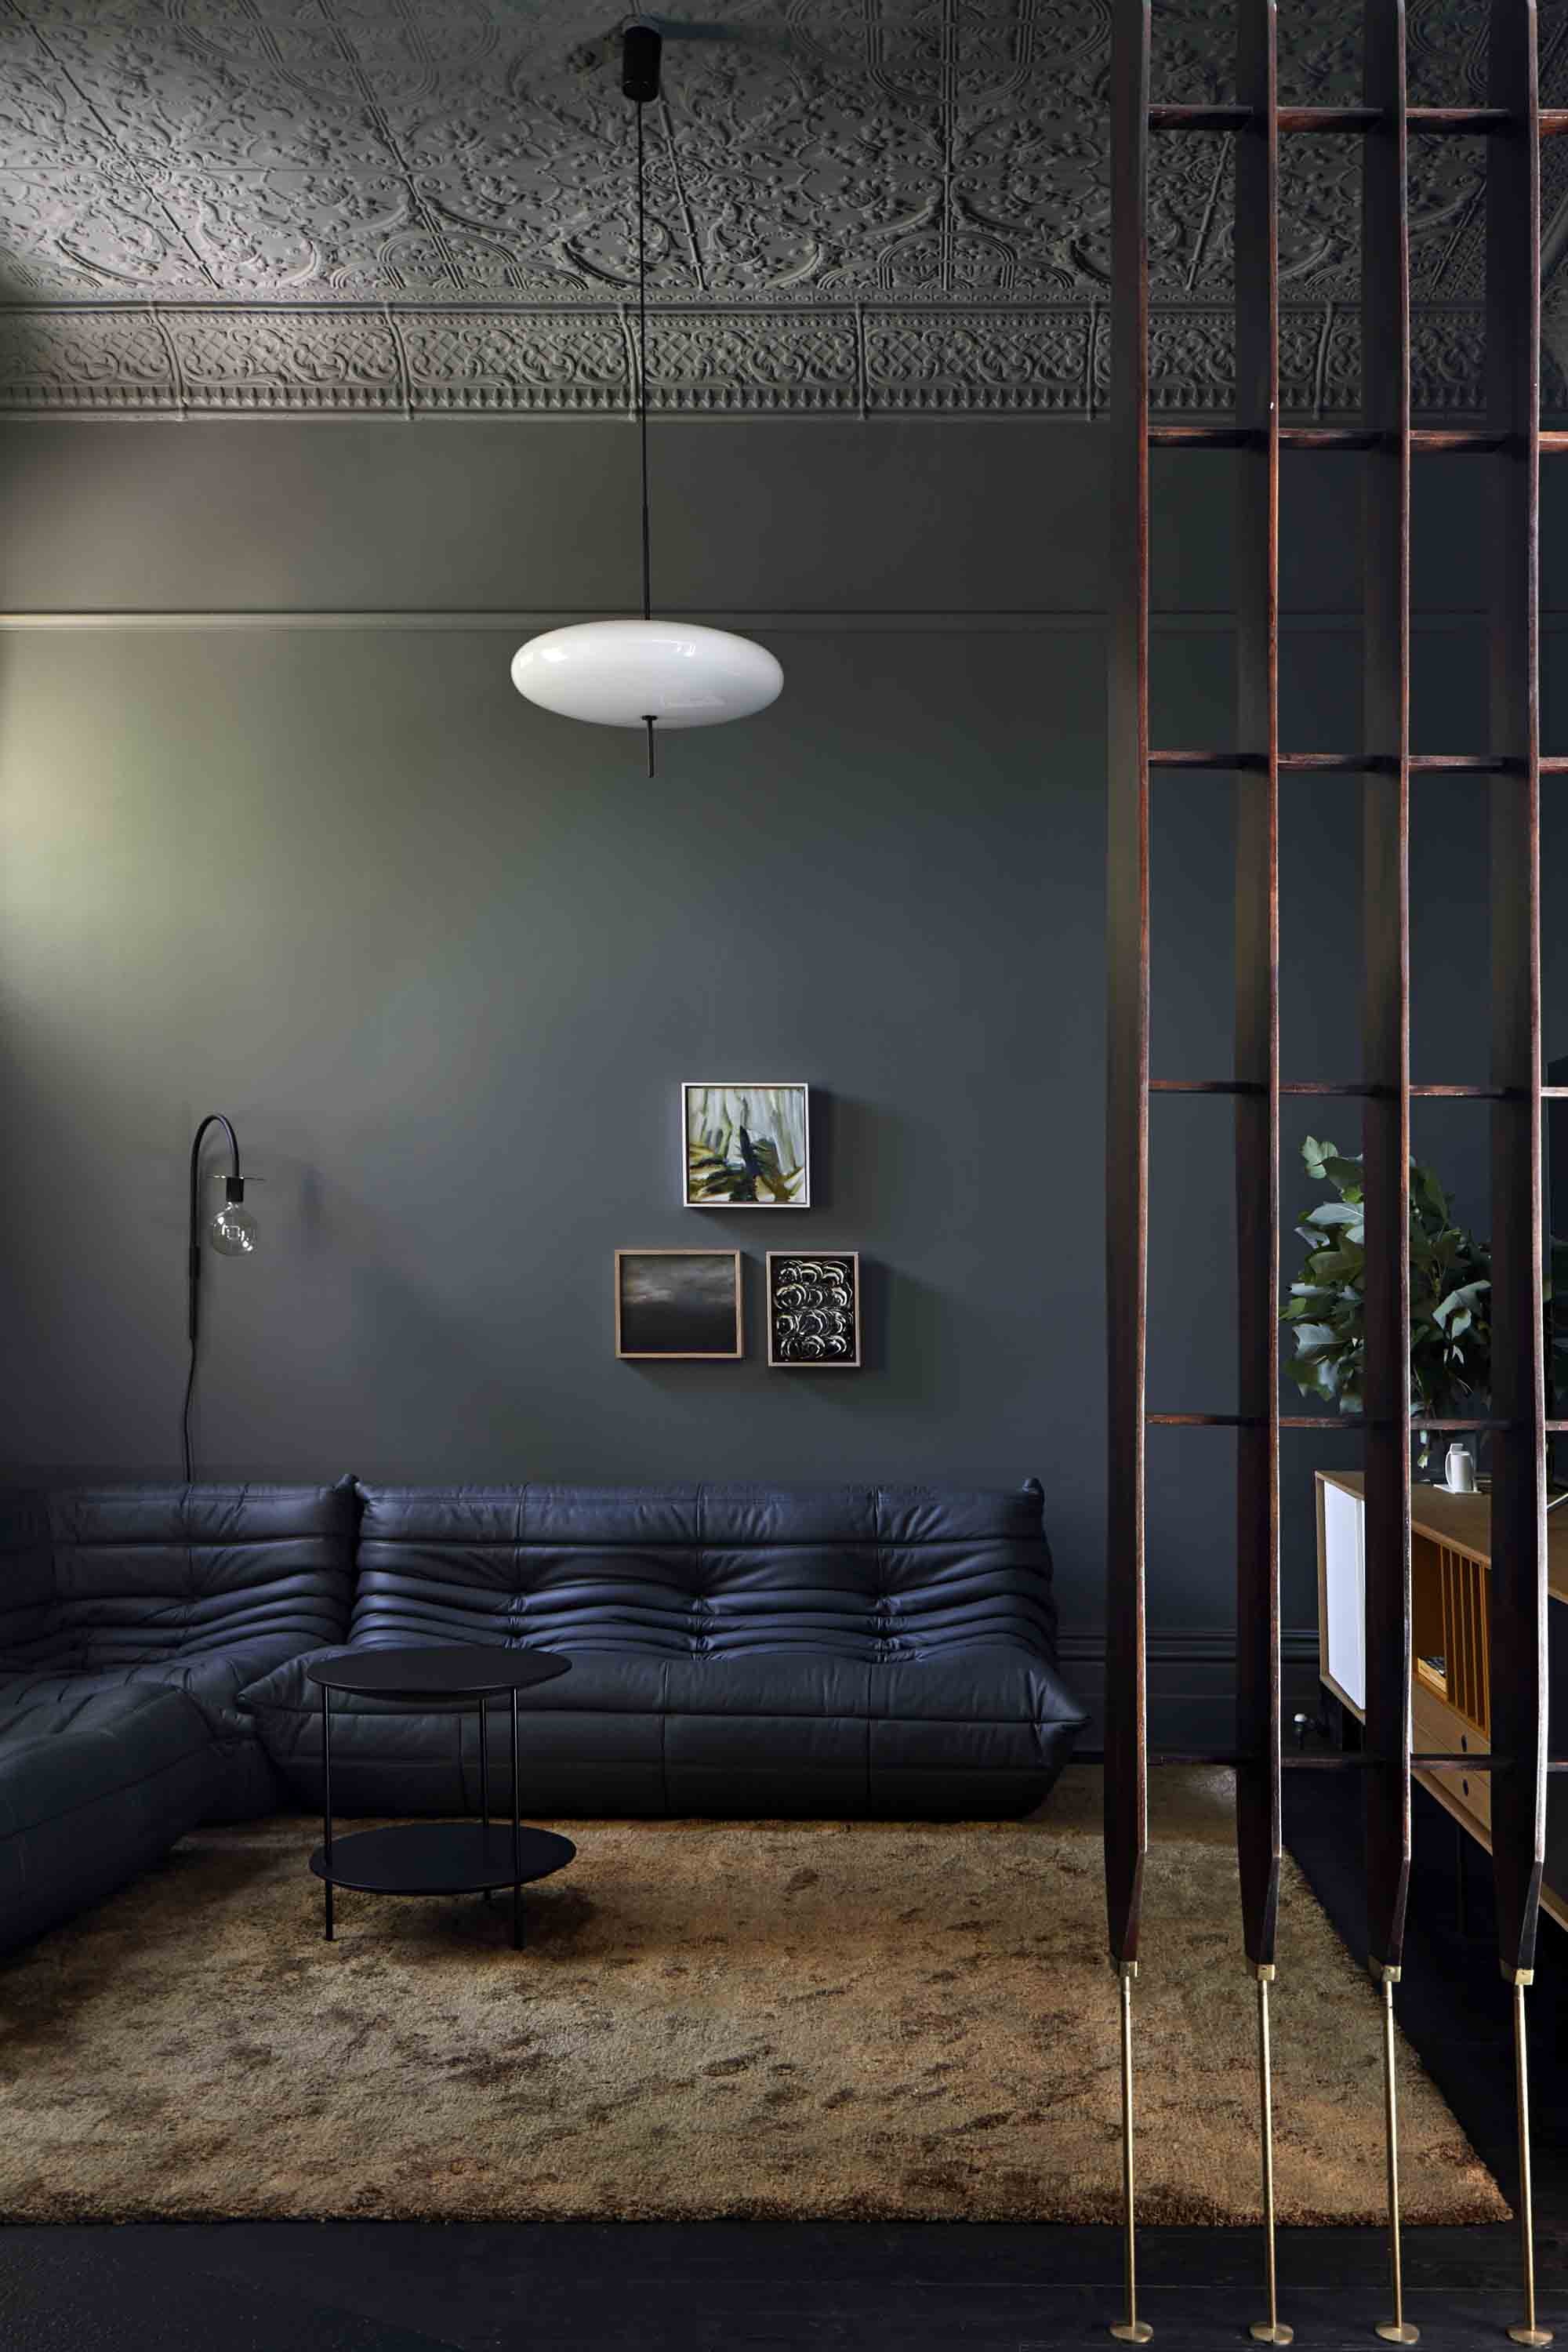 Décor do dia: sala de estar com estilo moderno e tons de preto (Foto: Shannon McGrath)